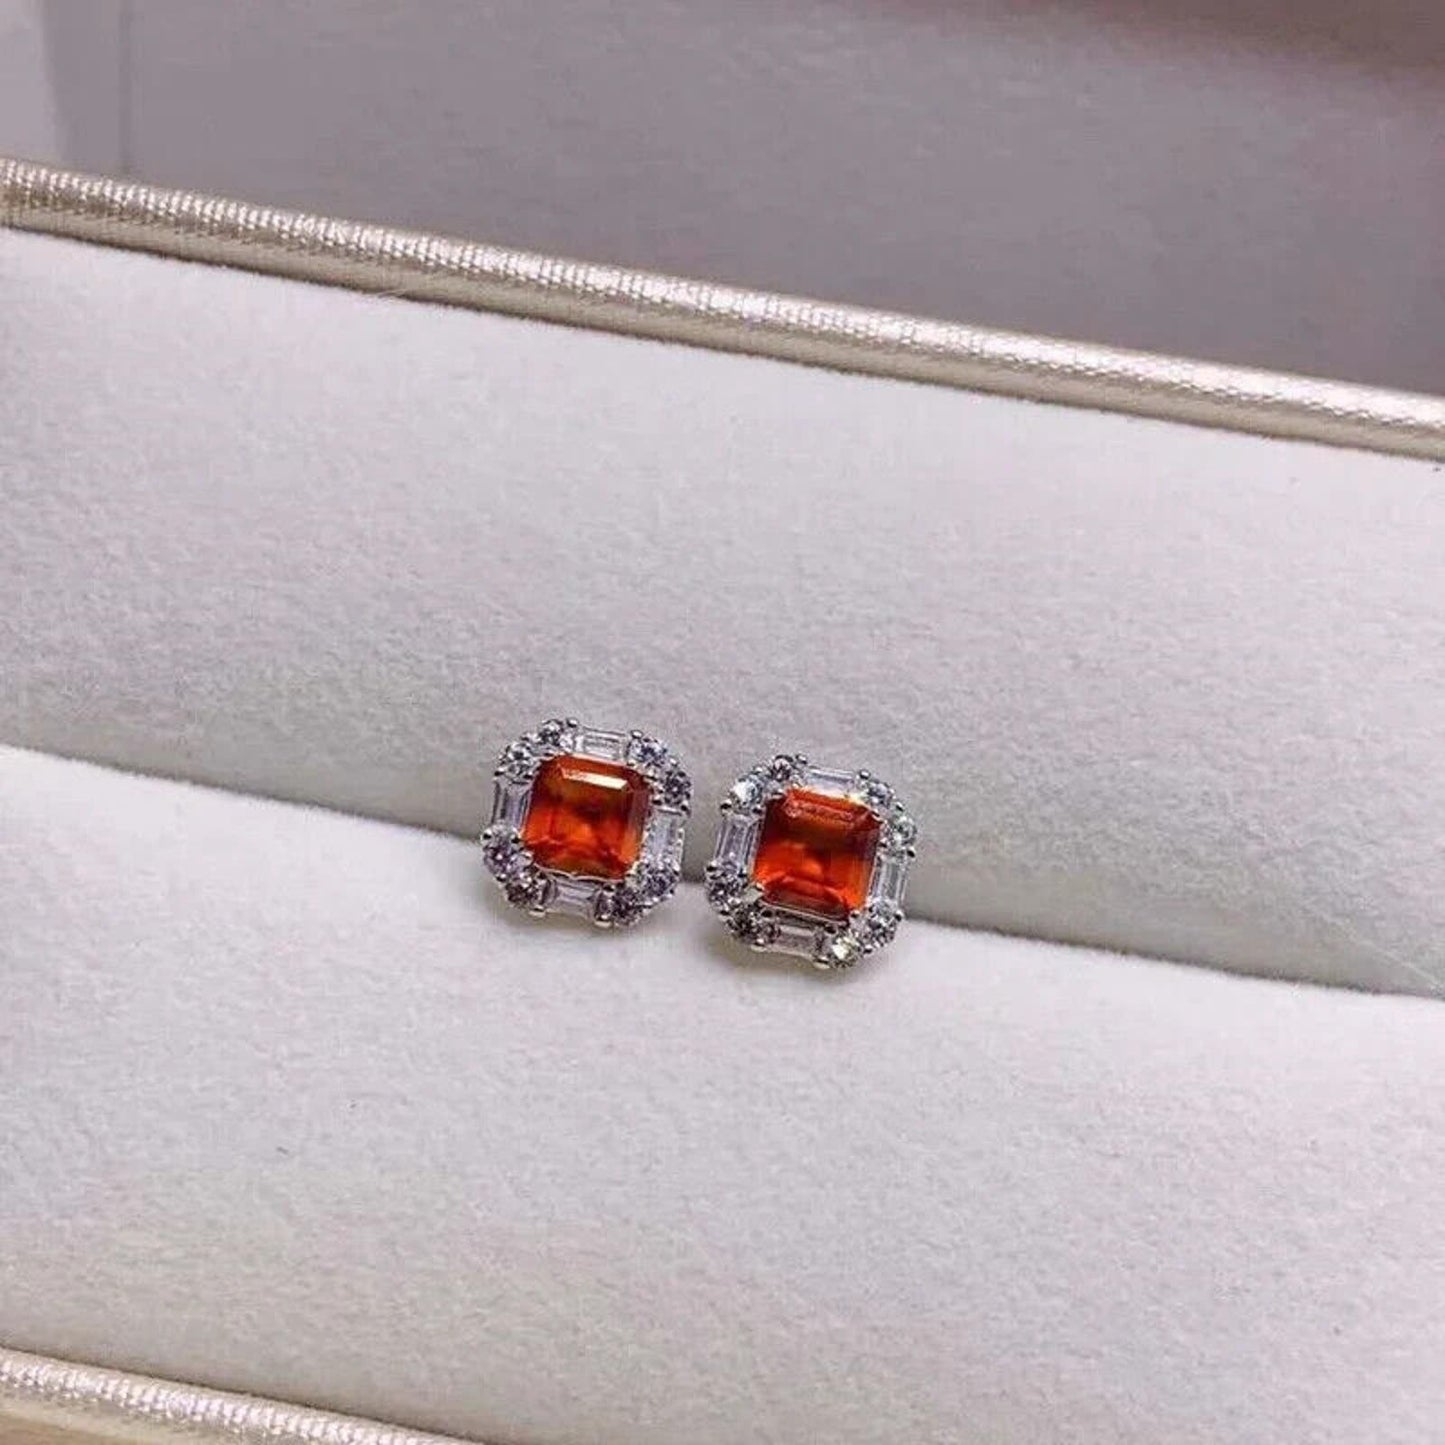 Orange Asscher Cut Garnet Stud Earrings 5x5mm Sterling Silver